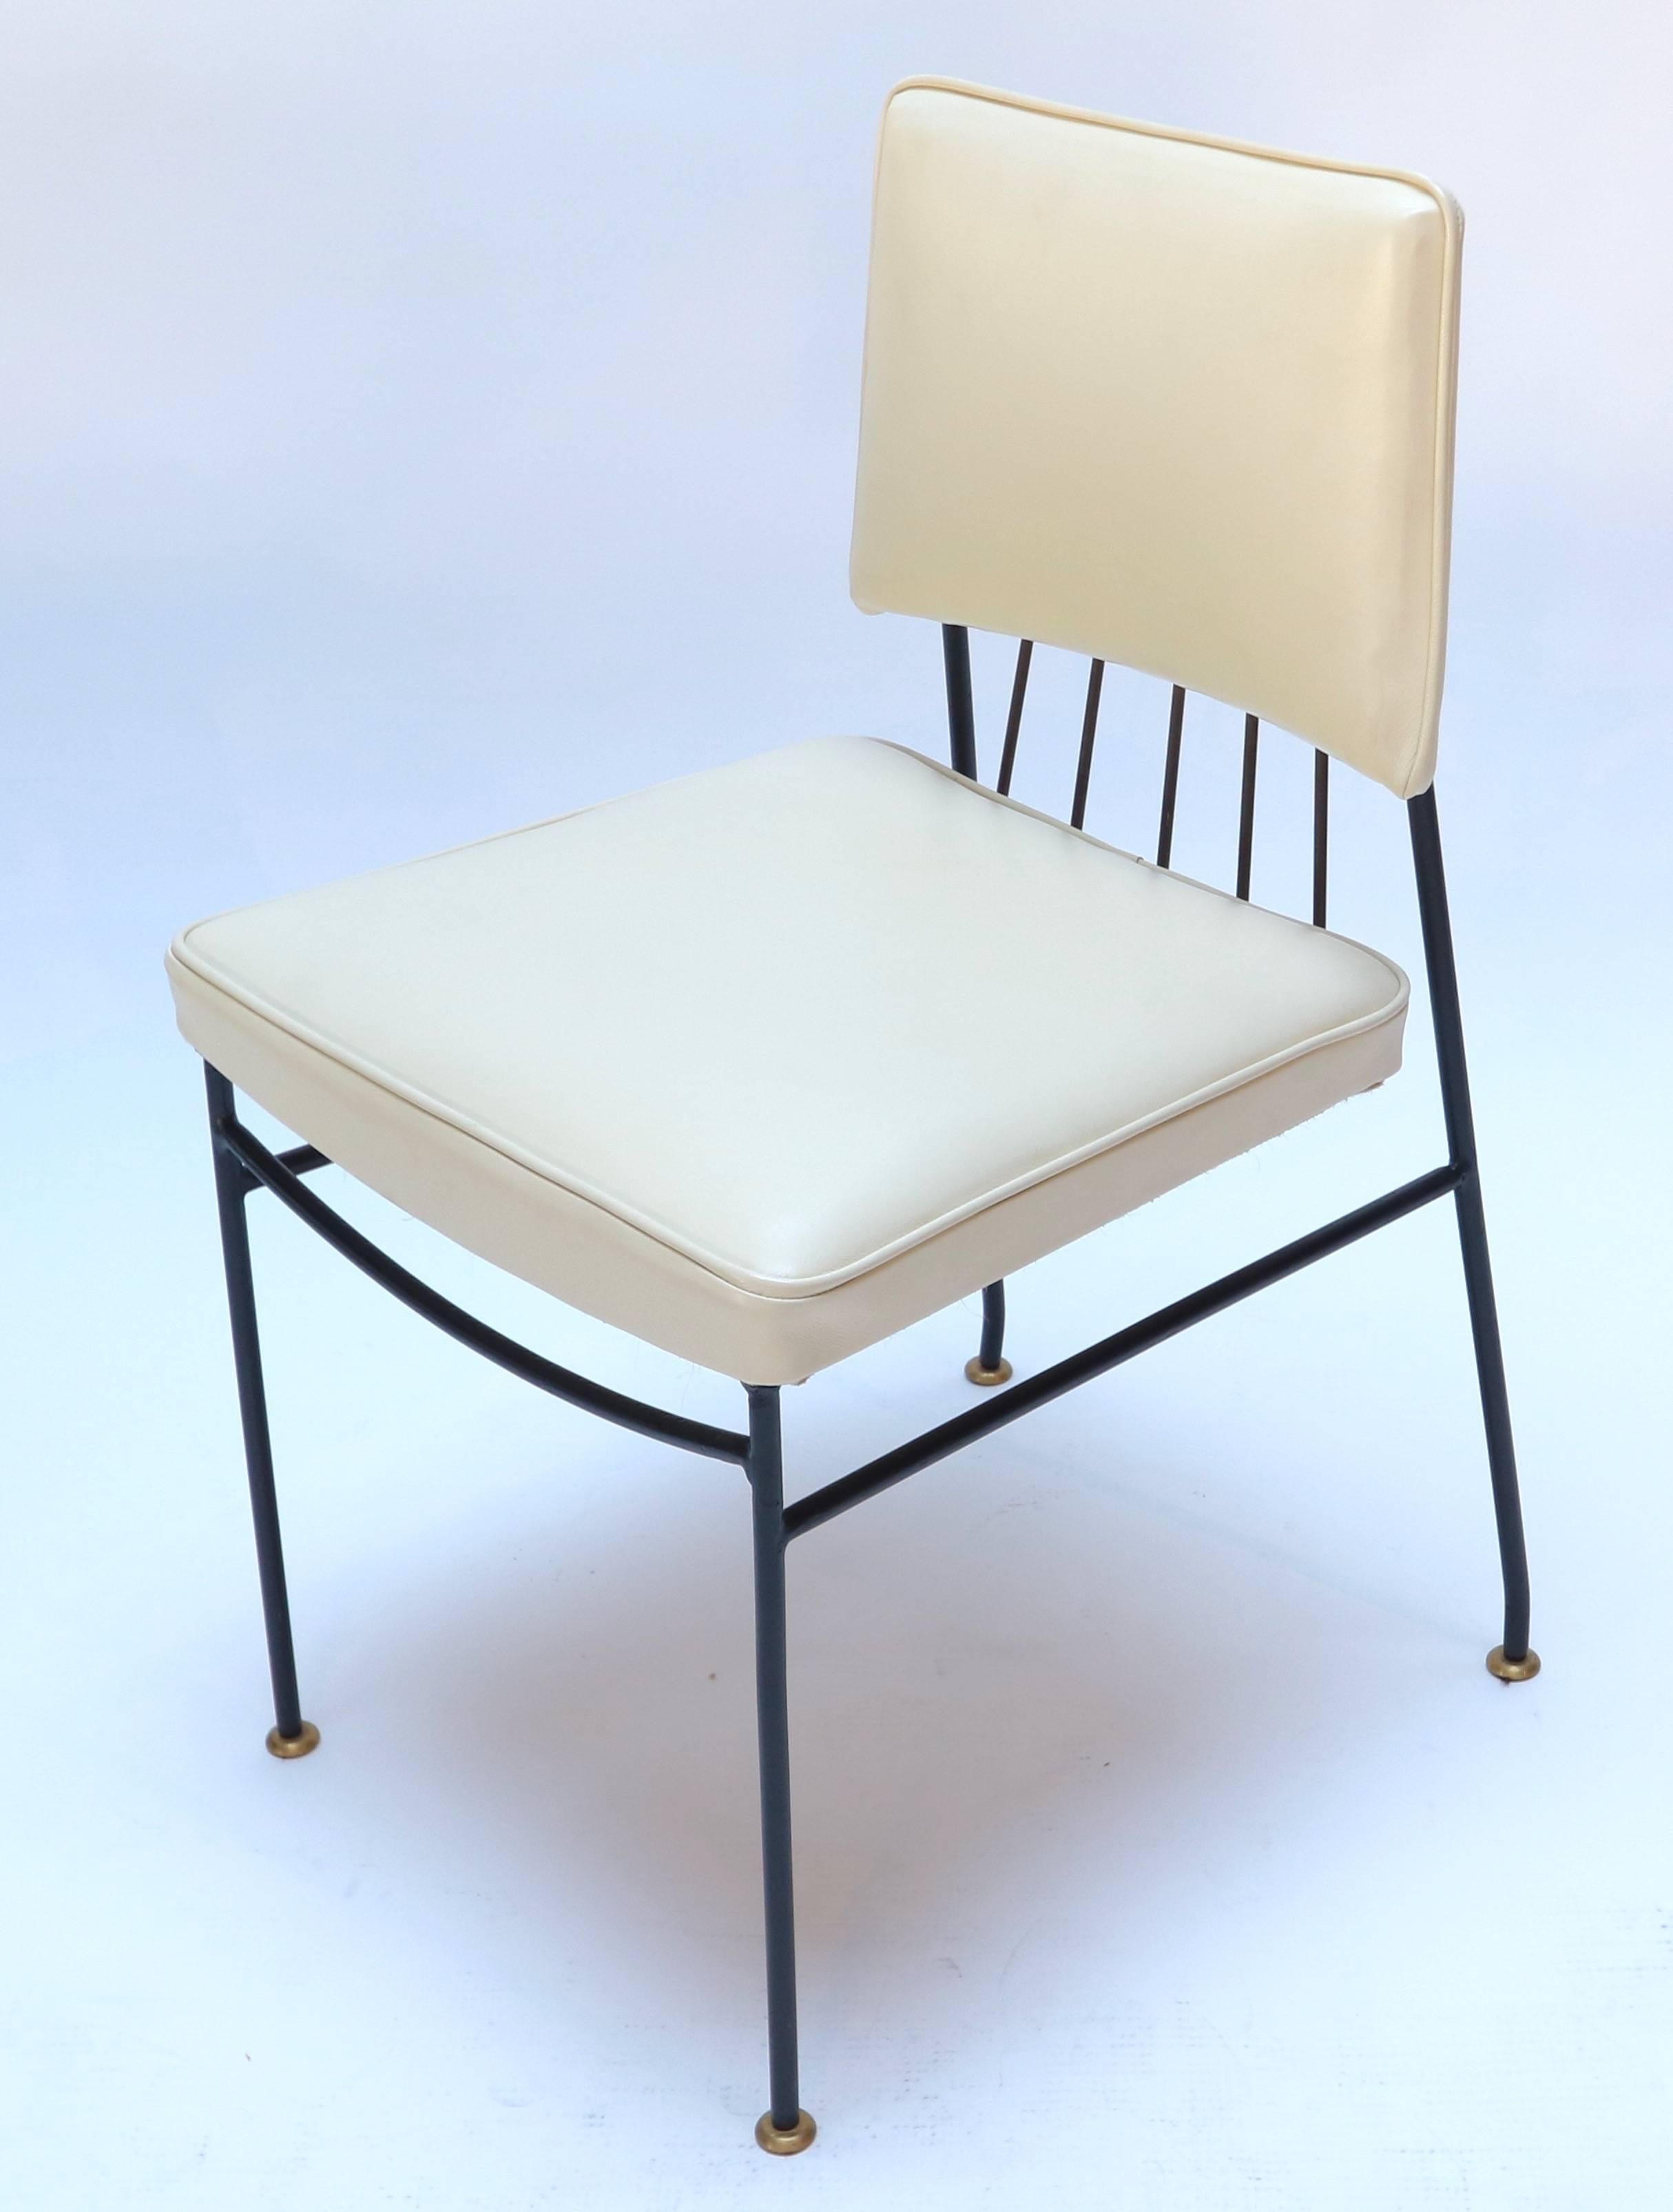 Ensemble de quatre chaises de salle à manger par Arturo Pani des années 1960 tapissées de cuir crème sur une structure métallique avec un dossier et des pieds en laiton.
Mesure : Profondeur du siège 16